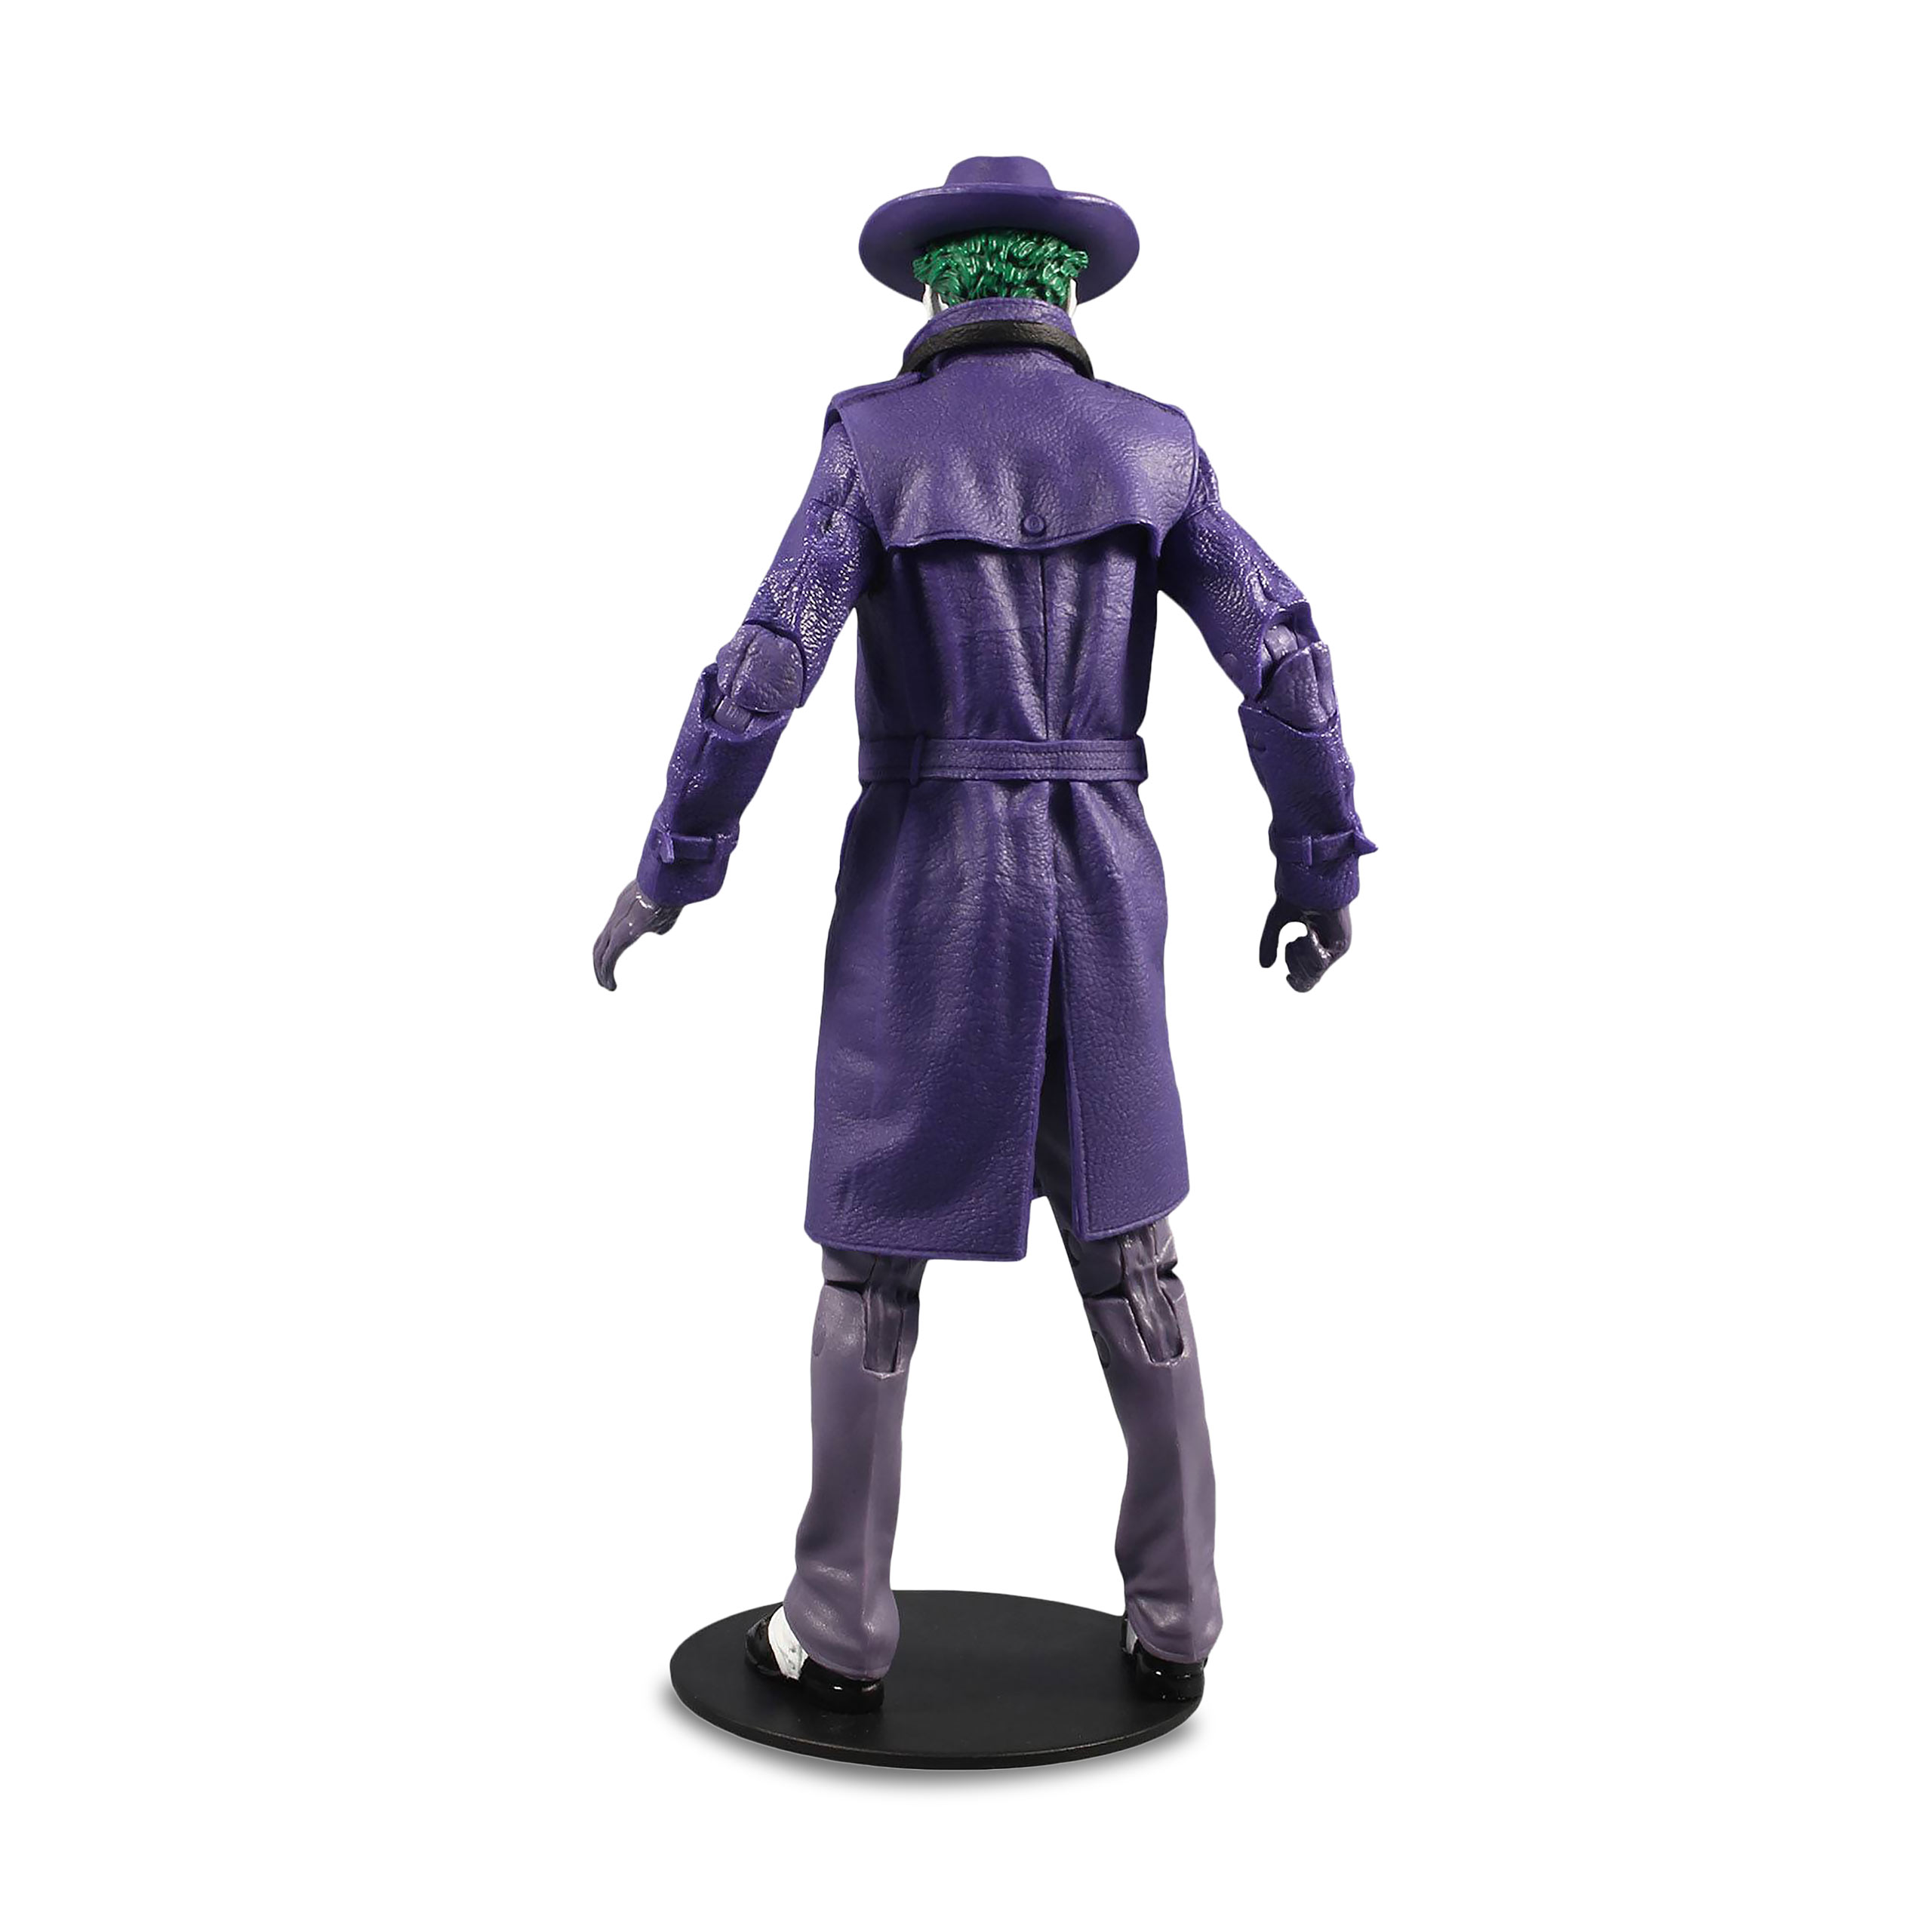 Joker - The Comedian Action Figure 18.5 cm